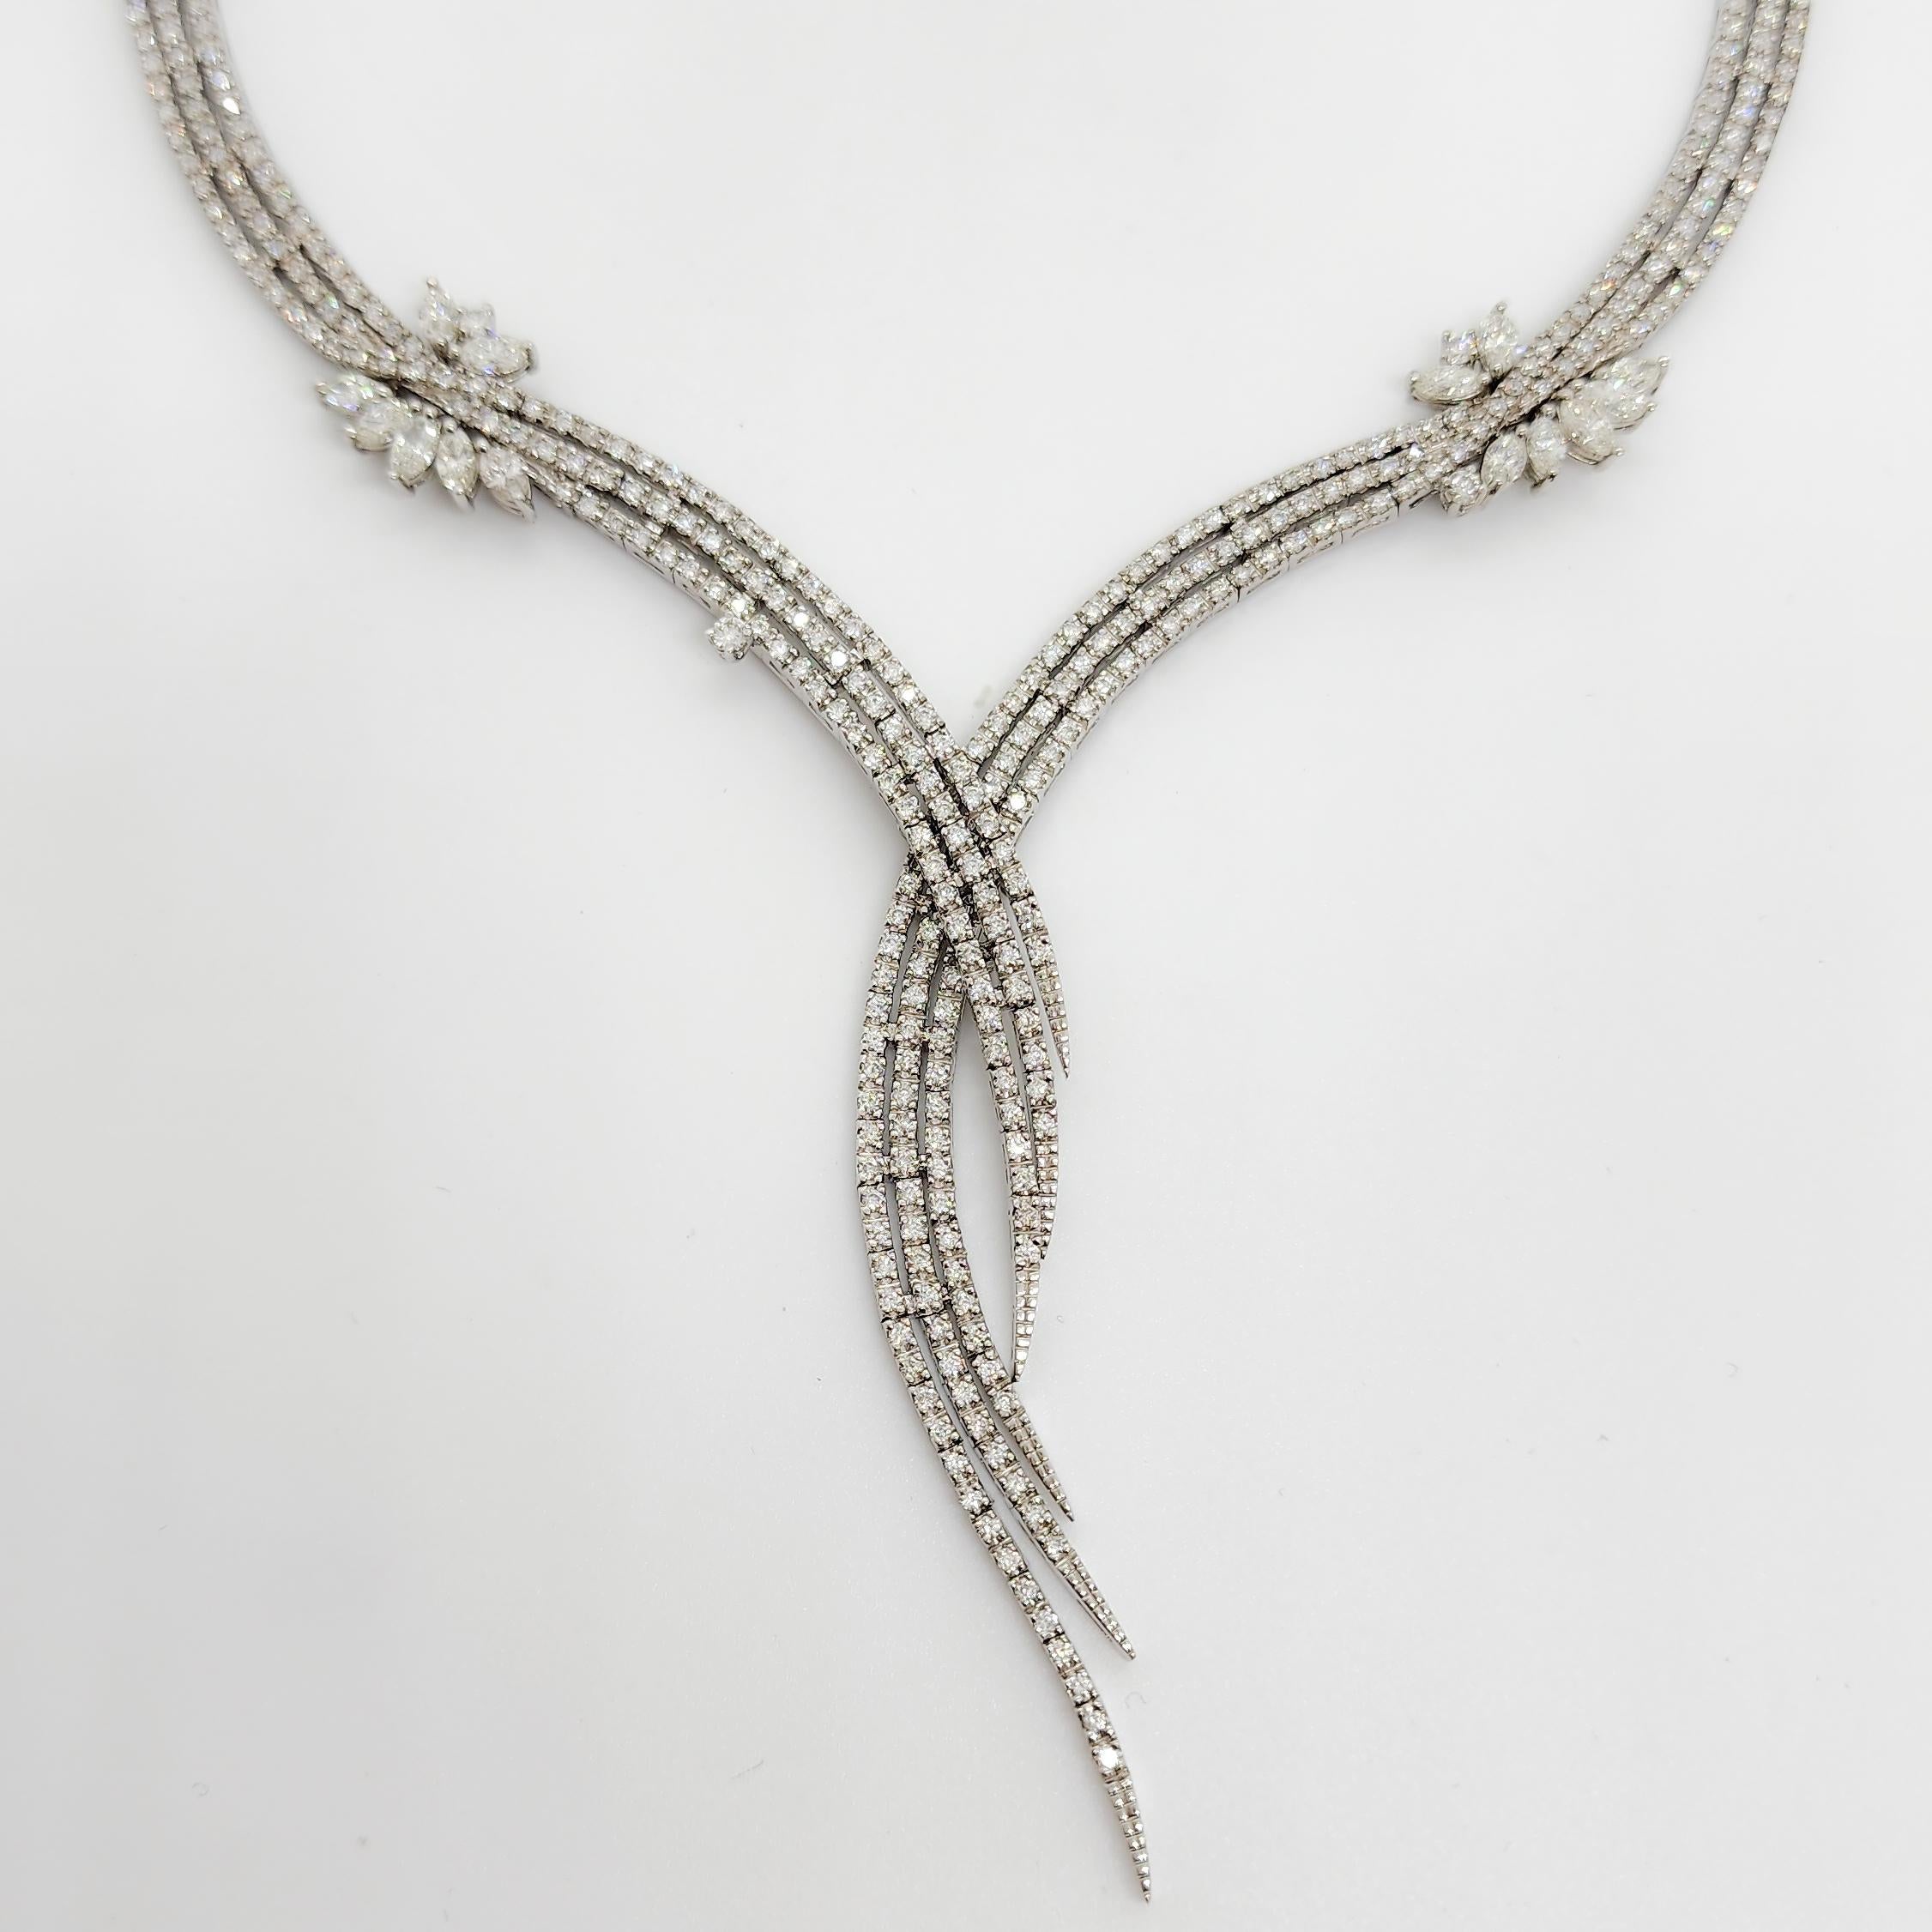 Wunderschöne 12,00 ct. weiße Diamanten in runder und marquiser Form.  Handgefertigt aus 14k Weißgold.  Diese Halskette ist ein echter Hingucker und perfekt für jeden Anlass!